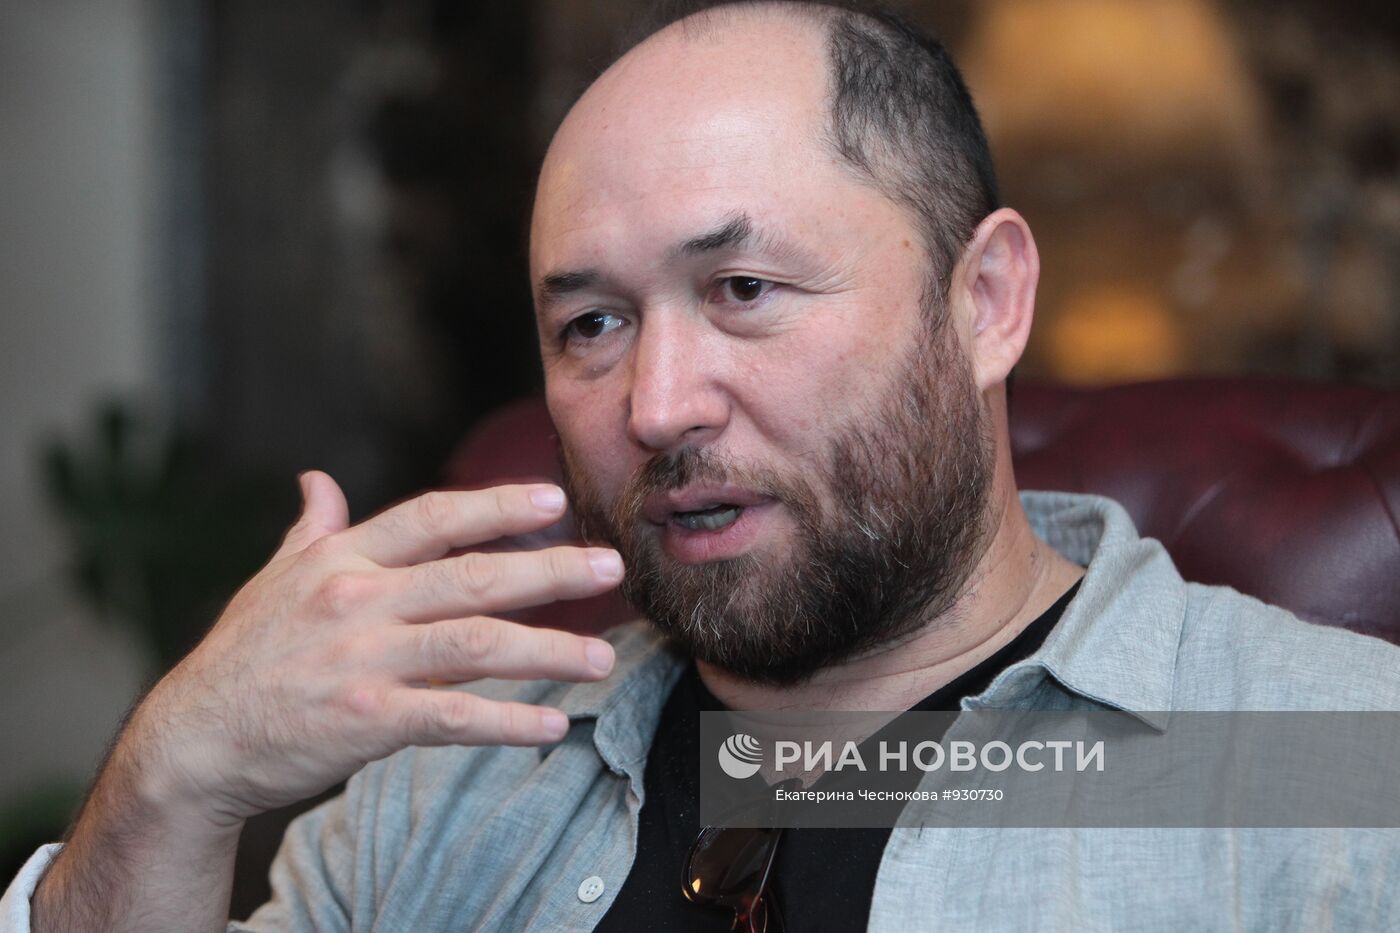 Тимур Бекмамбетов дал интервью на кинофестивале в Астане